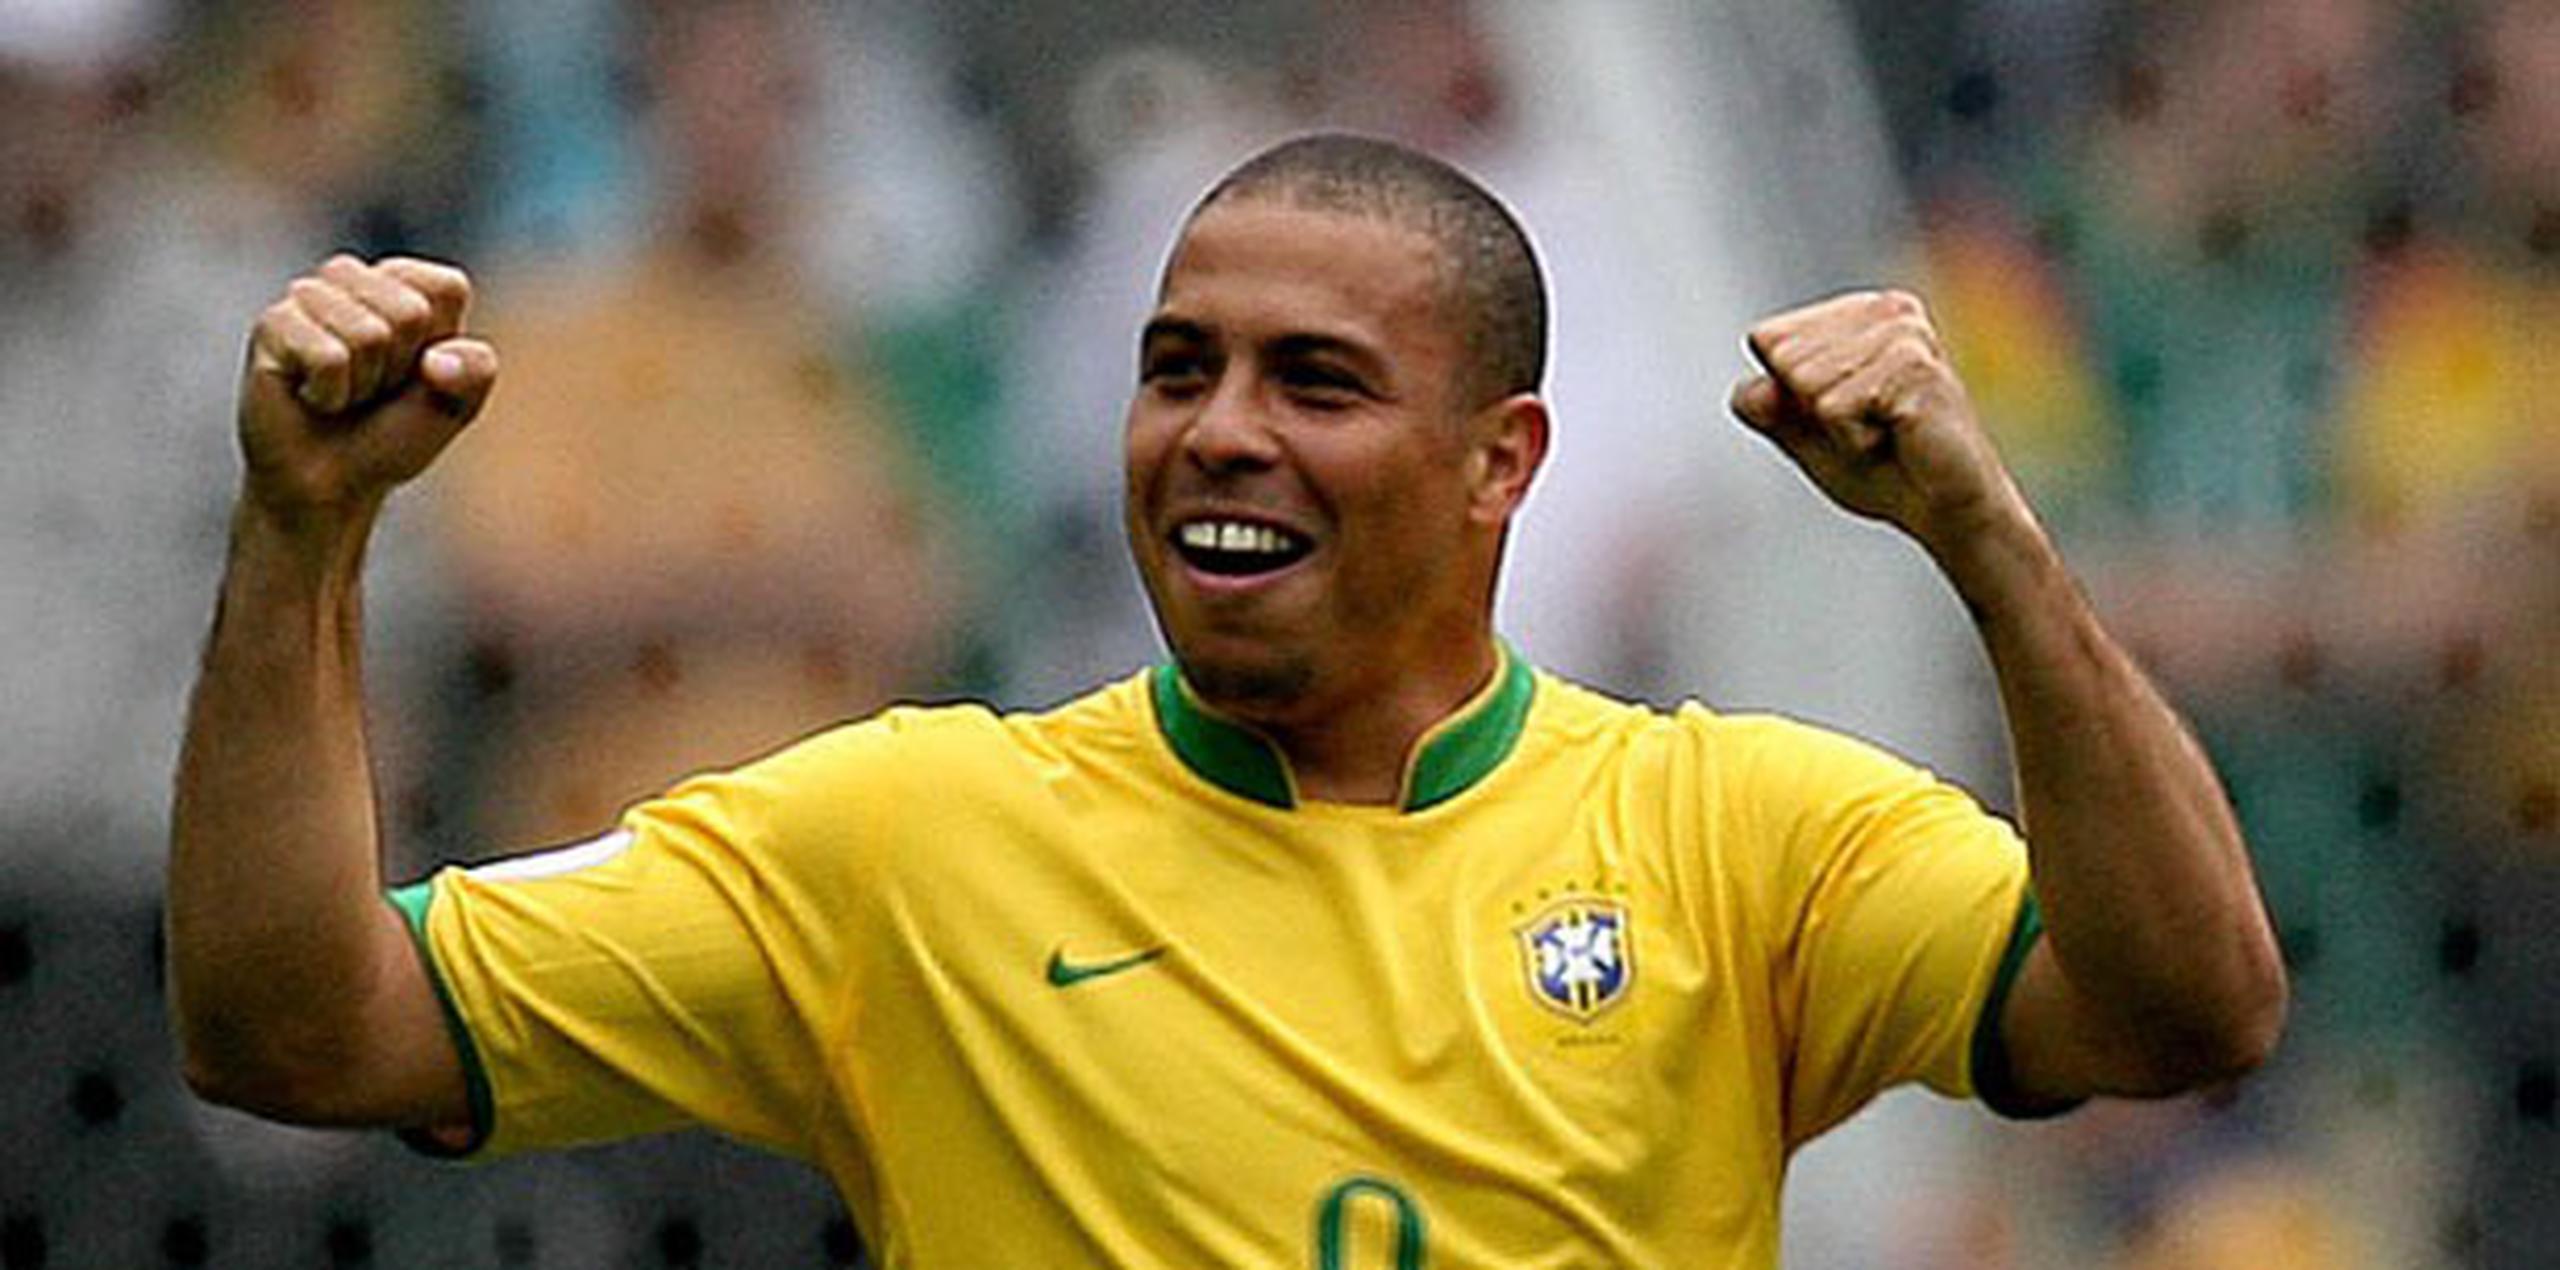 Ronaldo jugó por última vez en el 2011 con el club brasileño Corinthians. (Archivo)